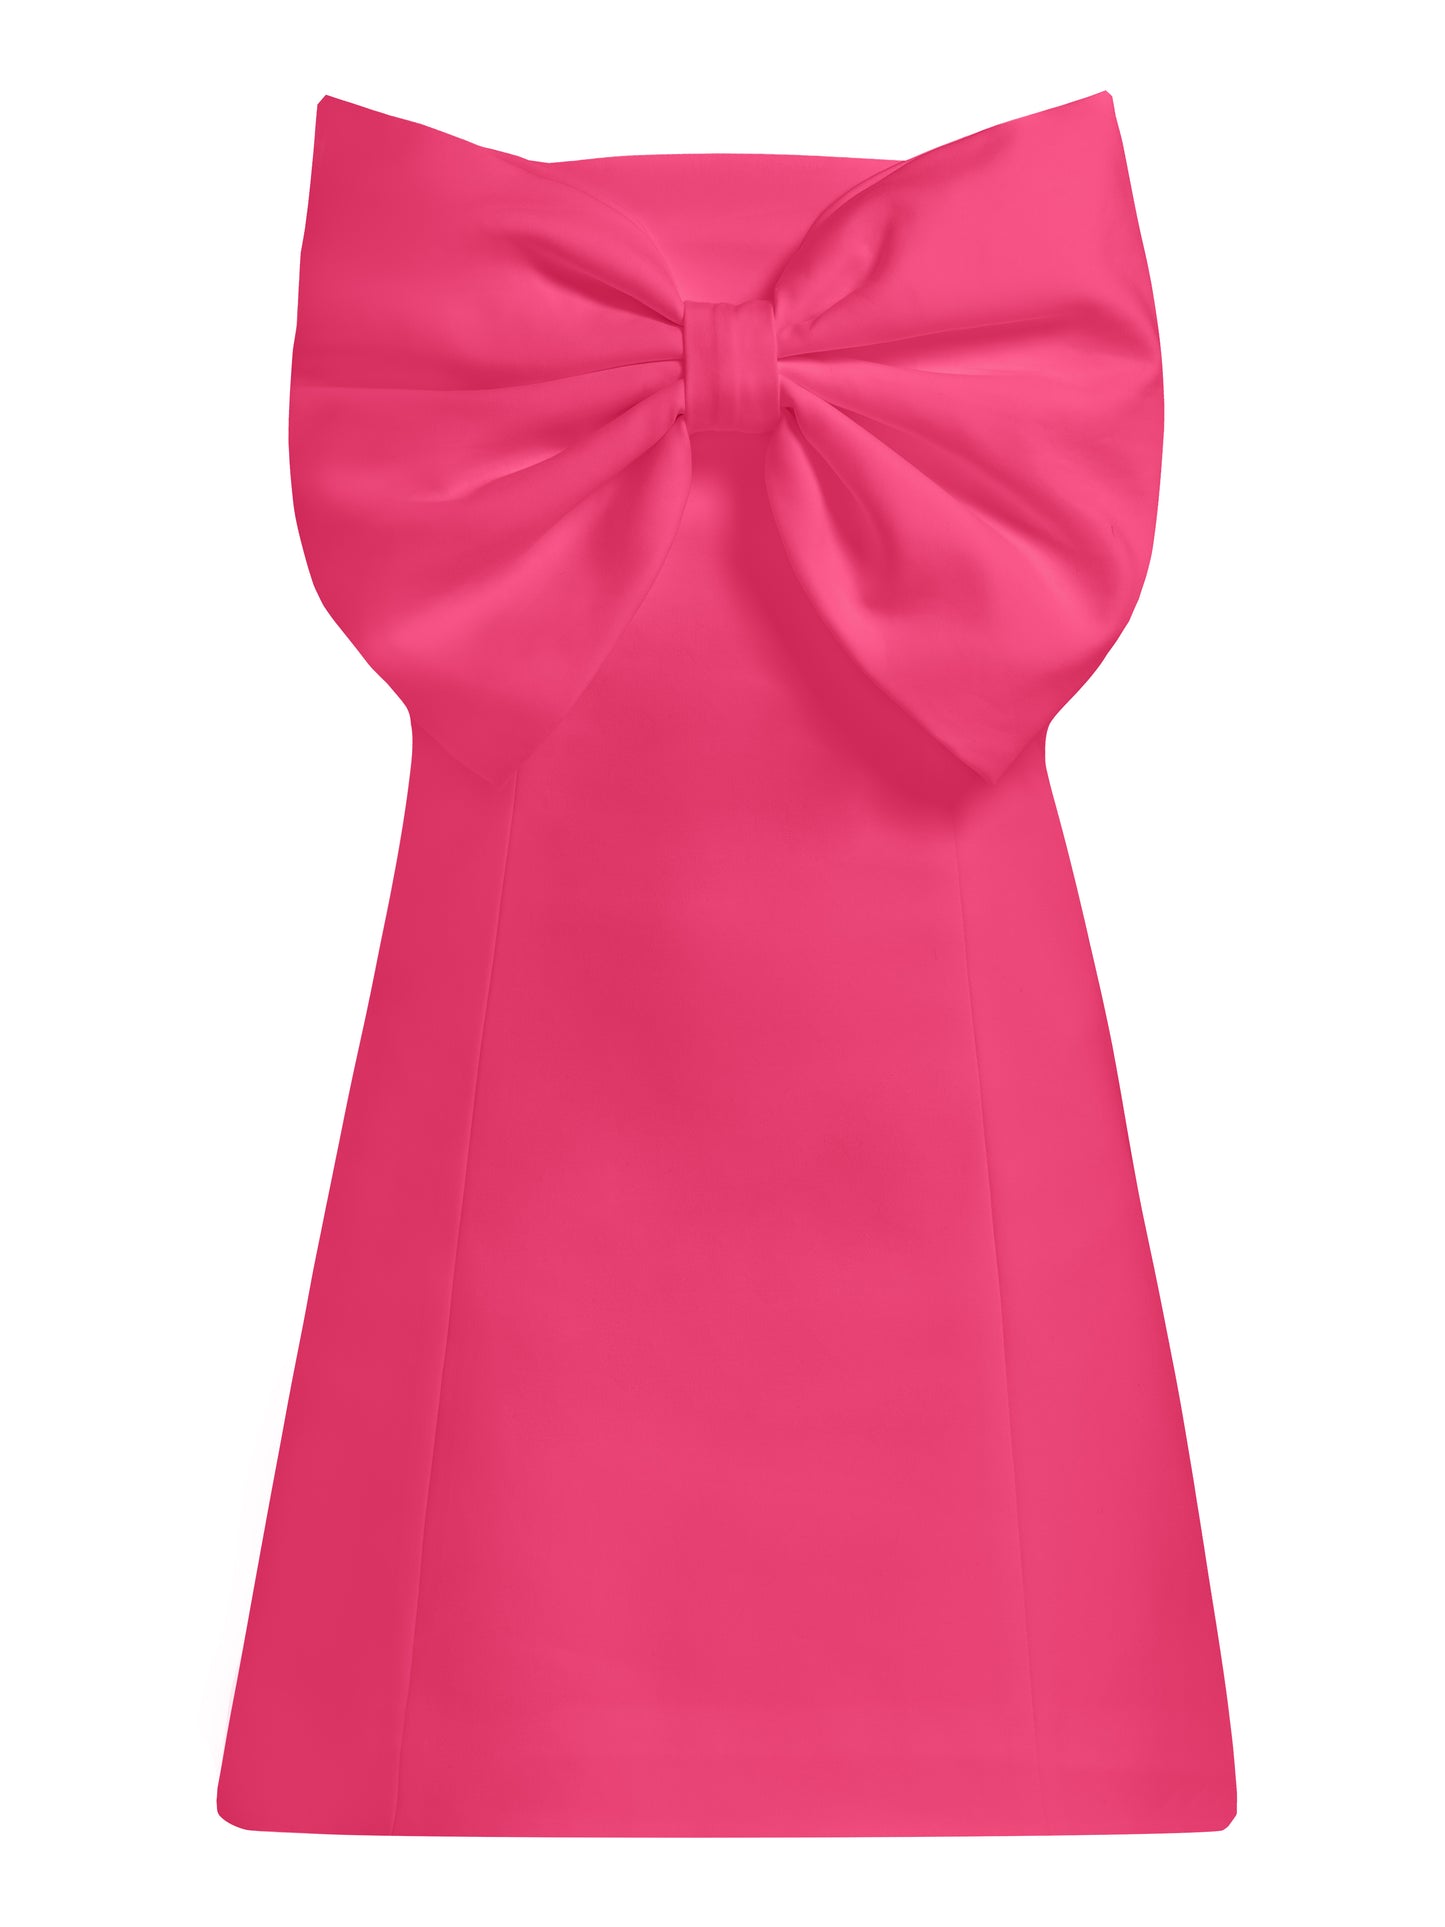 Love Affair Statement Bow Mini Dress - Pink